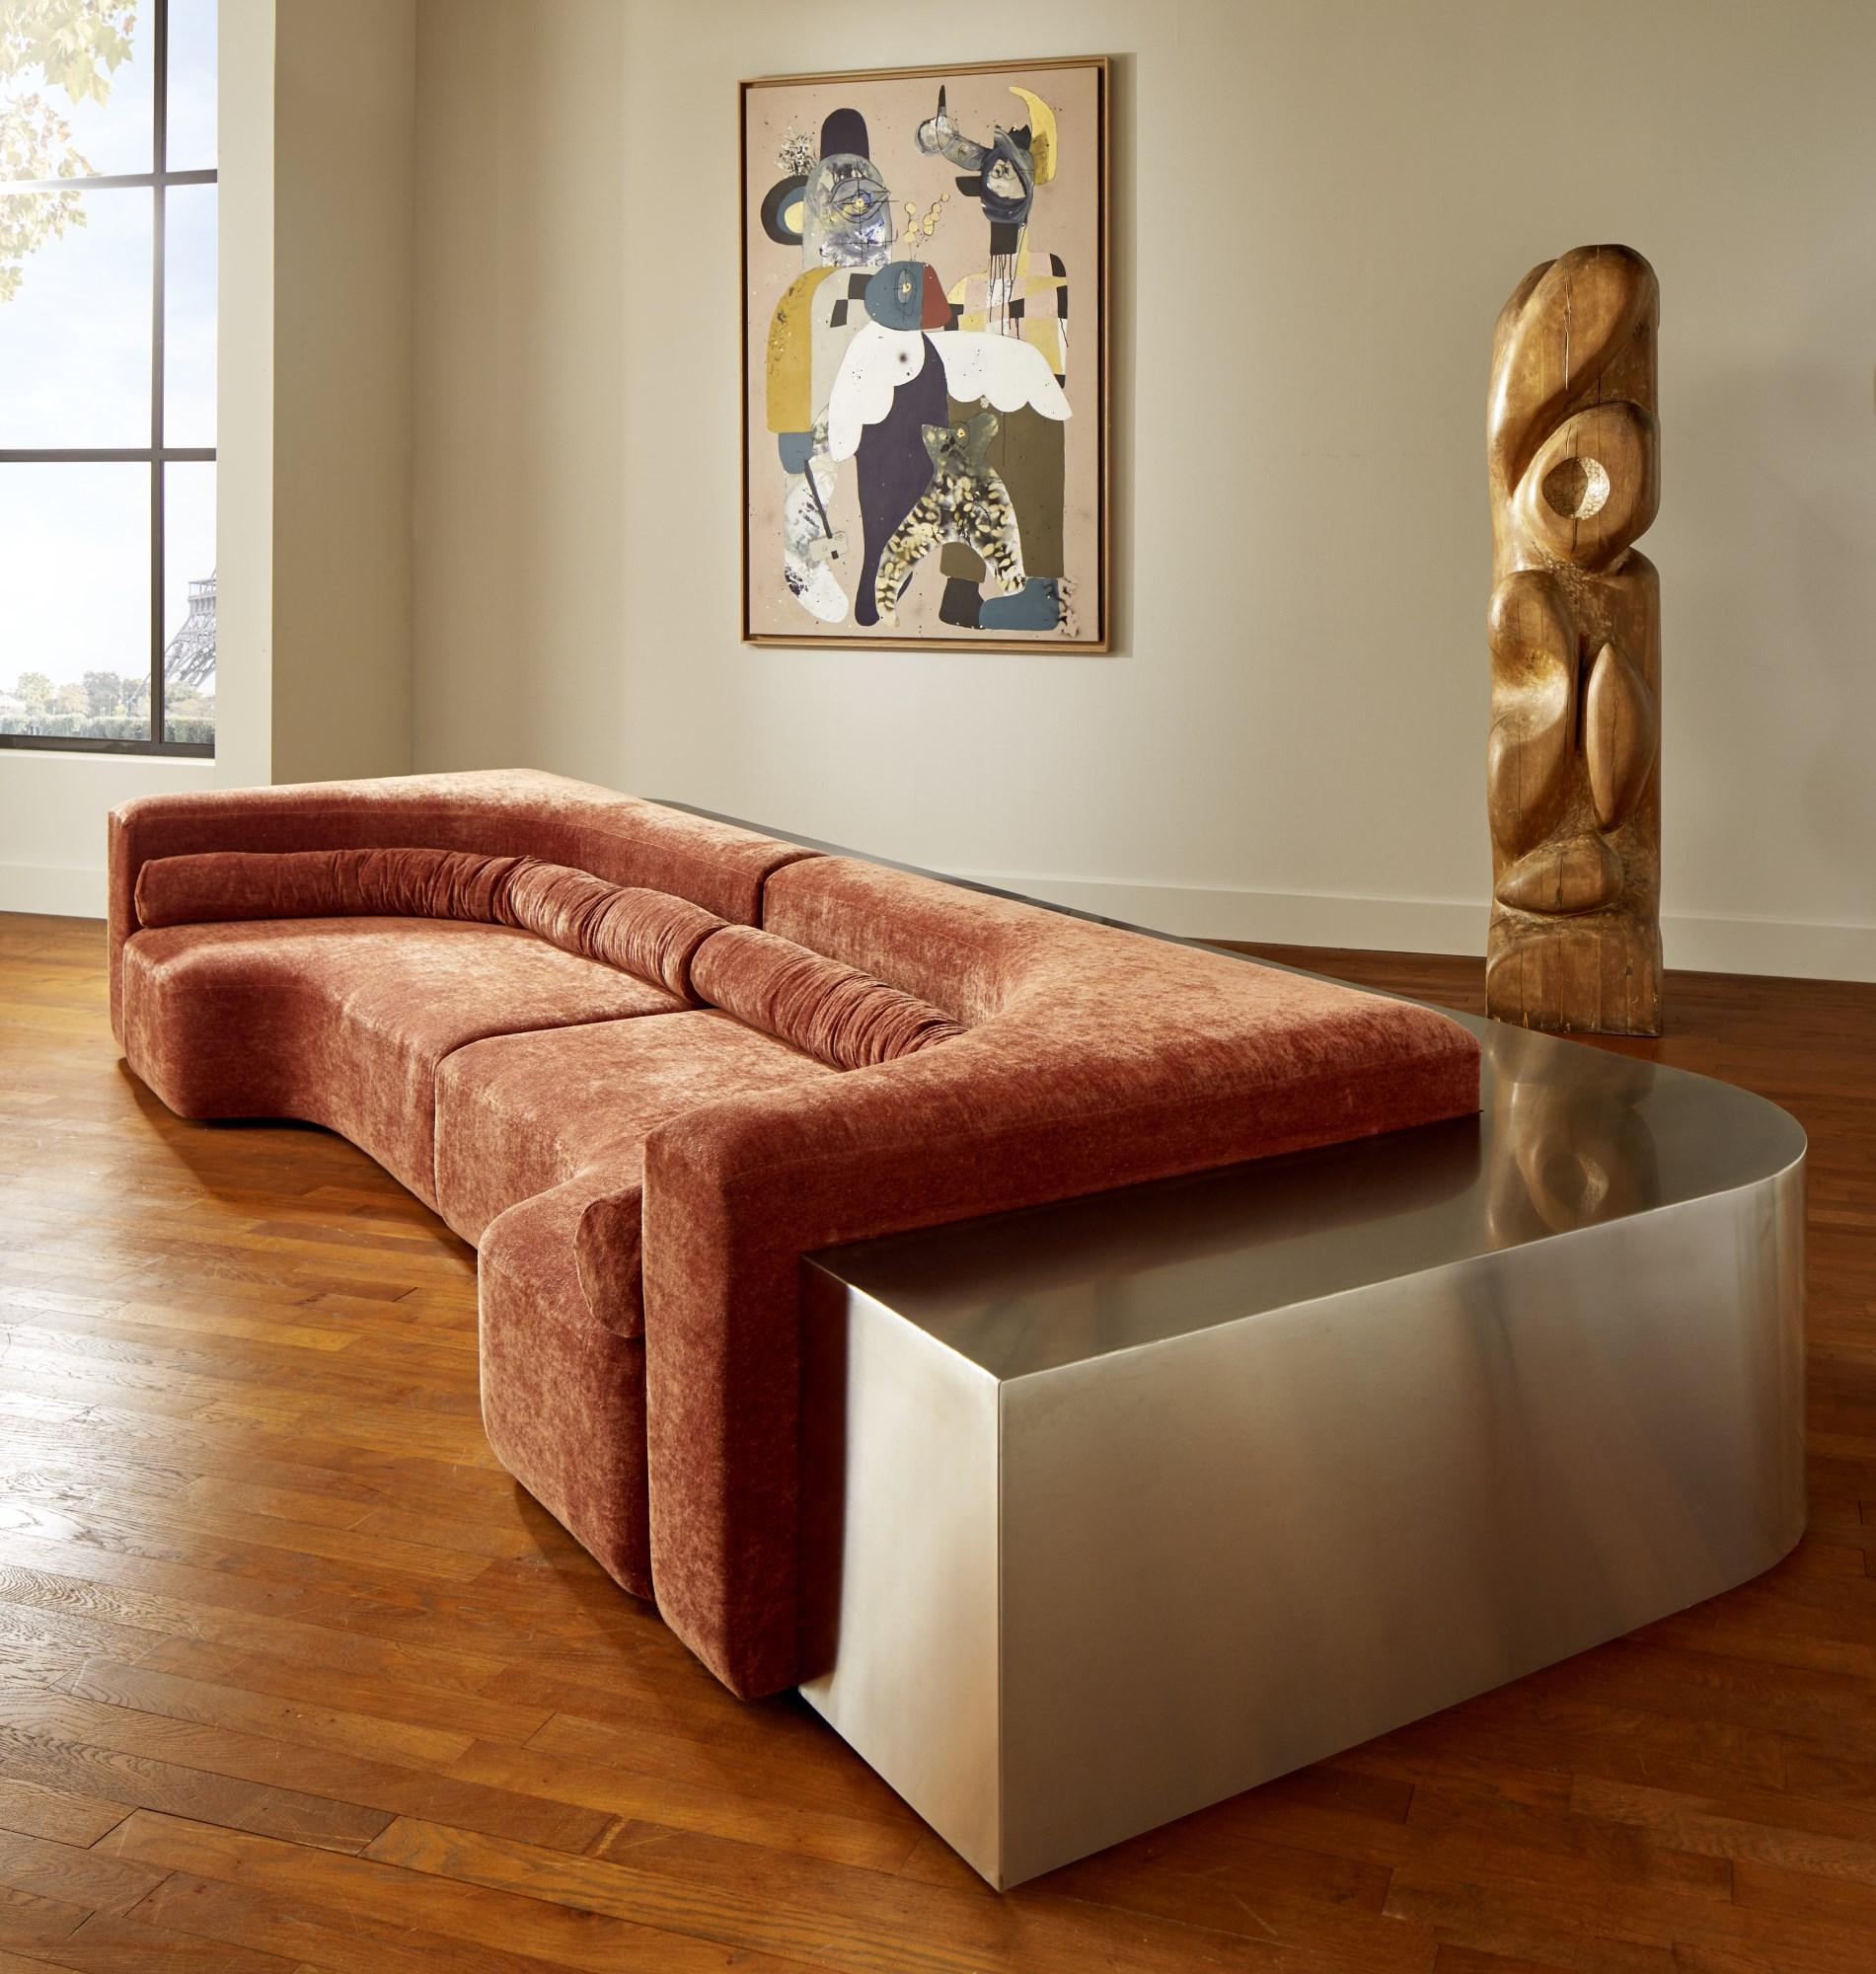 Canapé en 2 parties en acier inoxydable avec assise recouverte d'un tissu de Dédar.
Création par le Studio Glustin.
France, 2023.